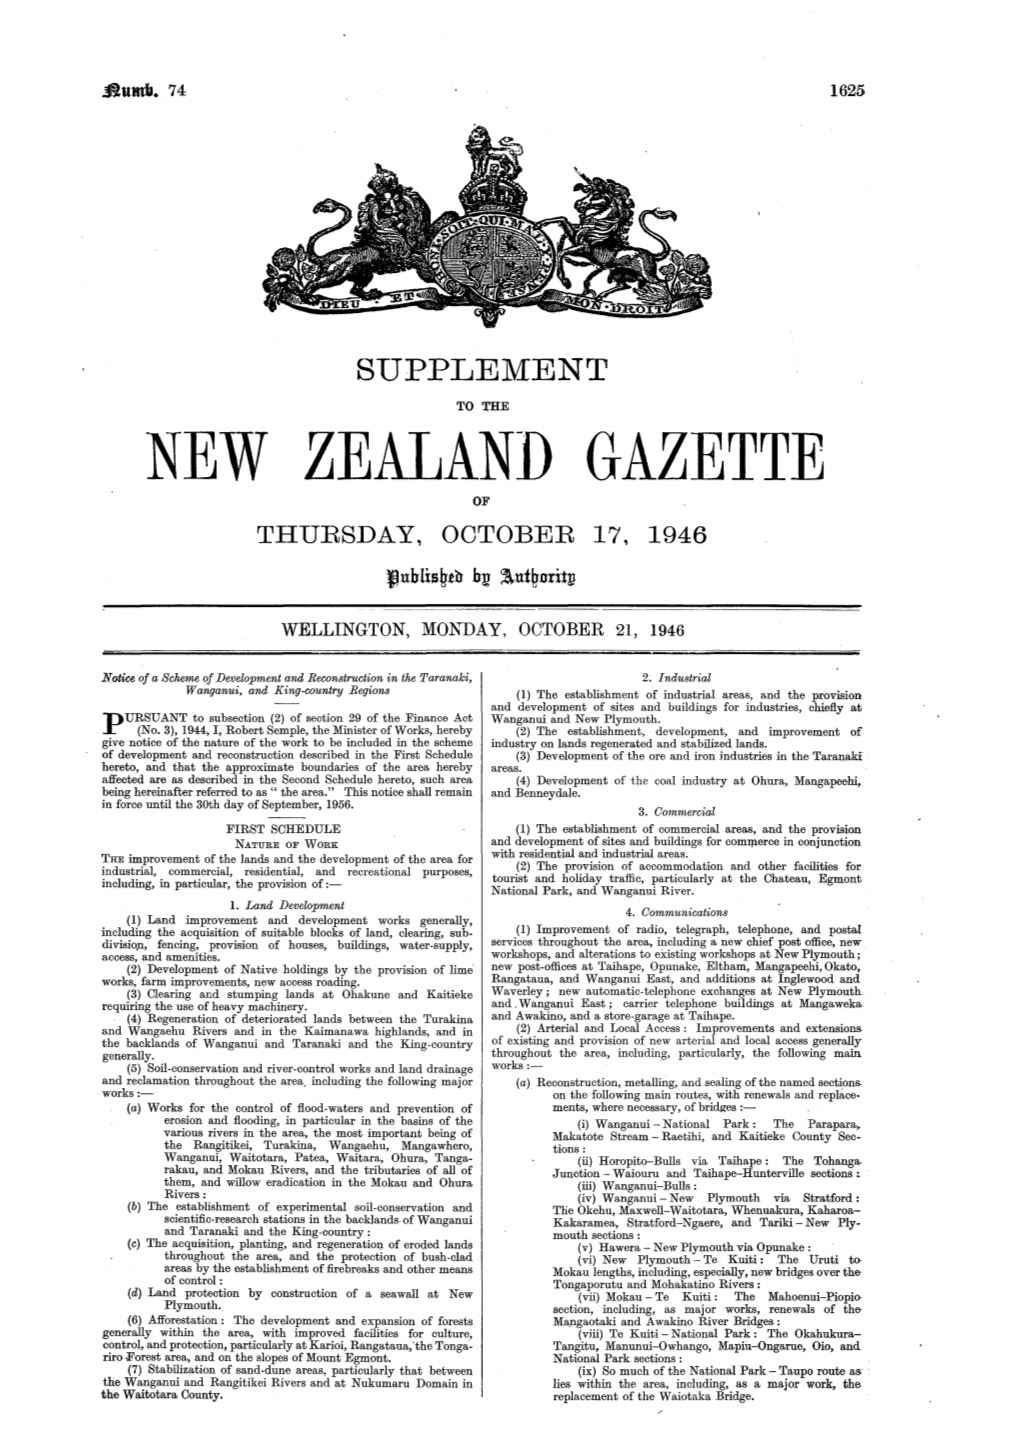 No 74, 21 October 1946, 1625